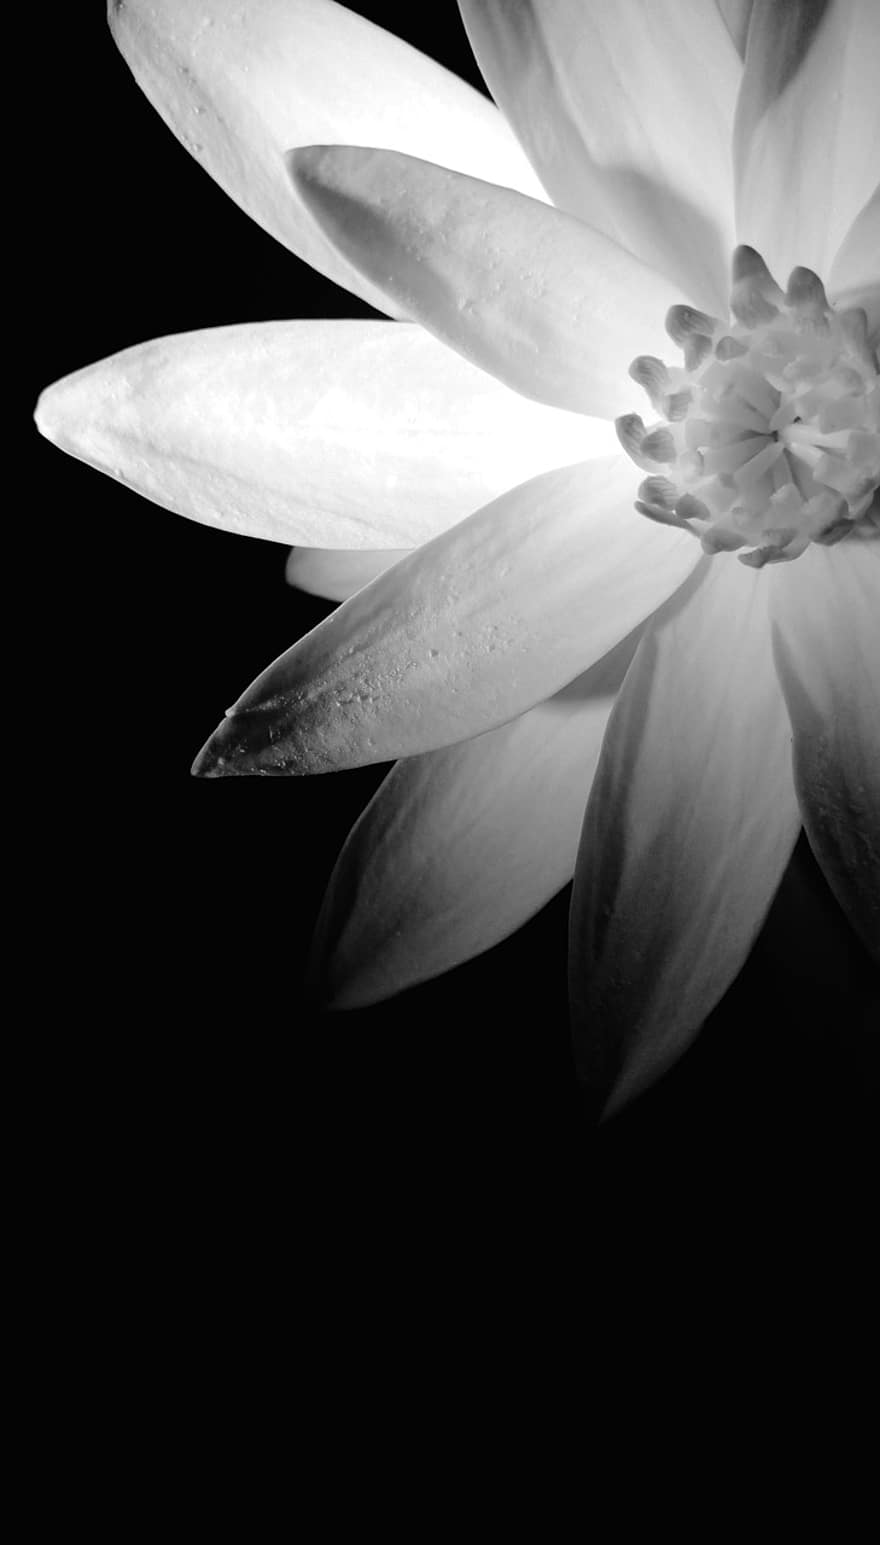 λουλούδι, φυτό, σκιές, μαύρο και άσπρο, μονόχρωμος